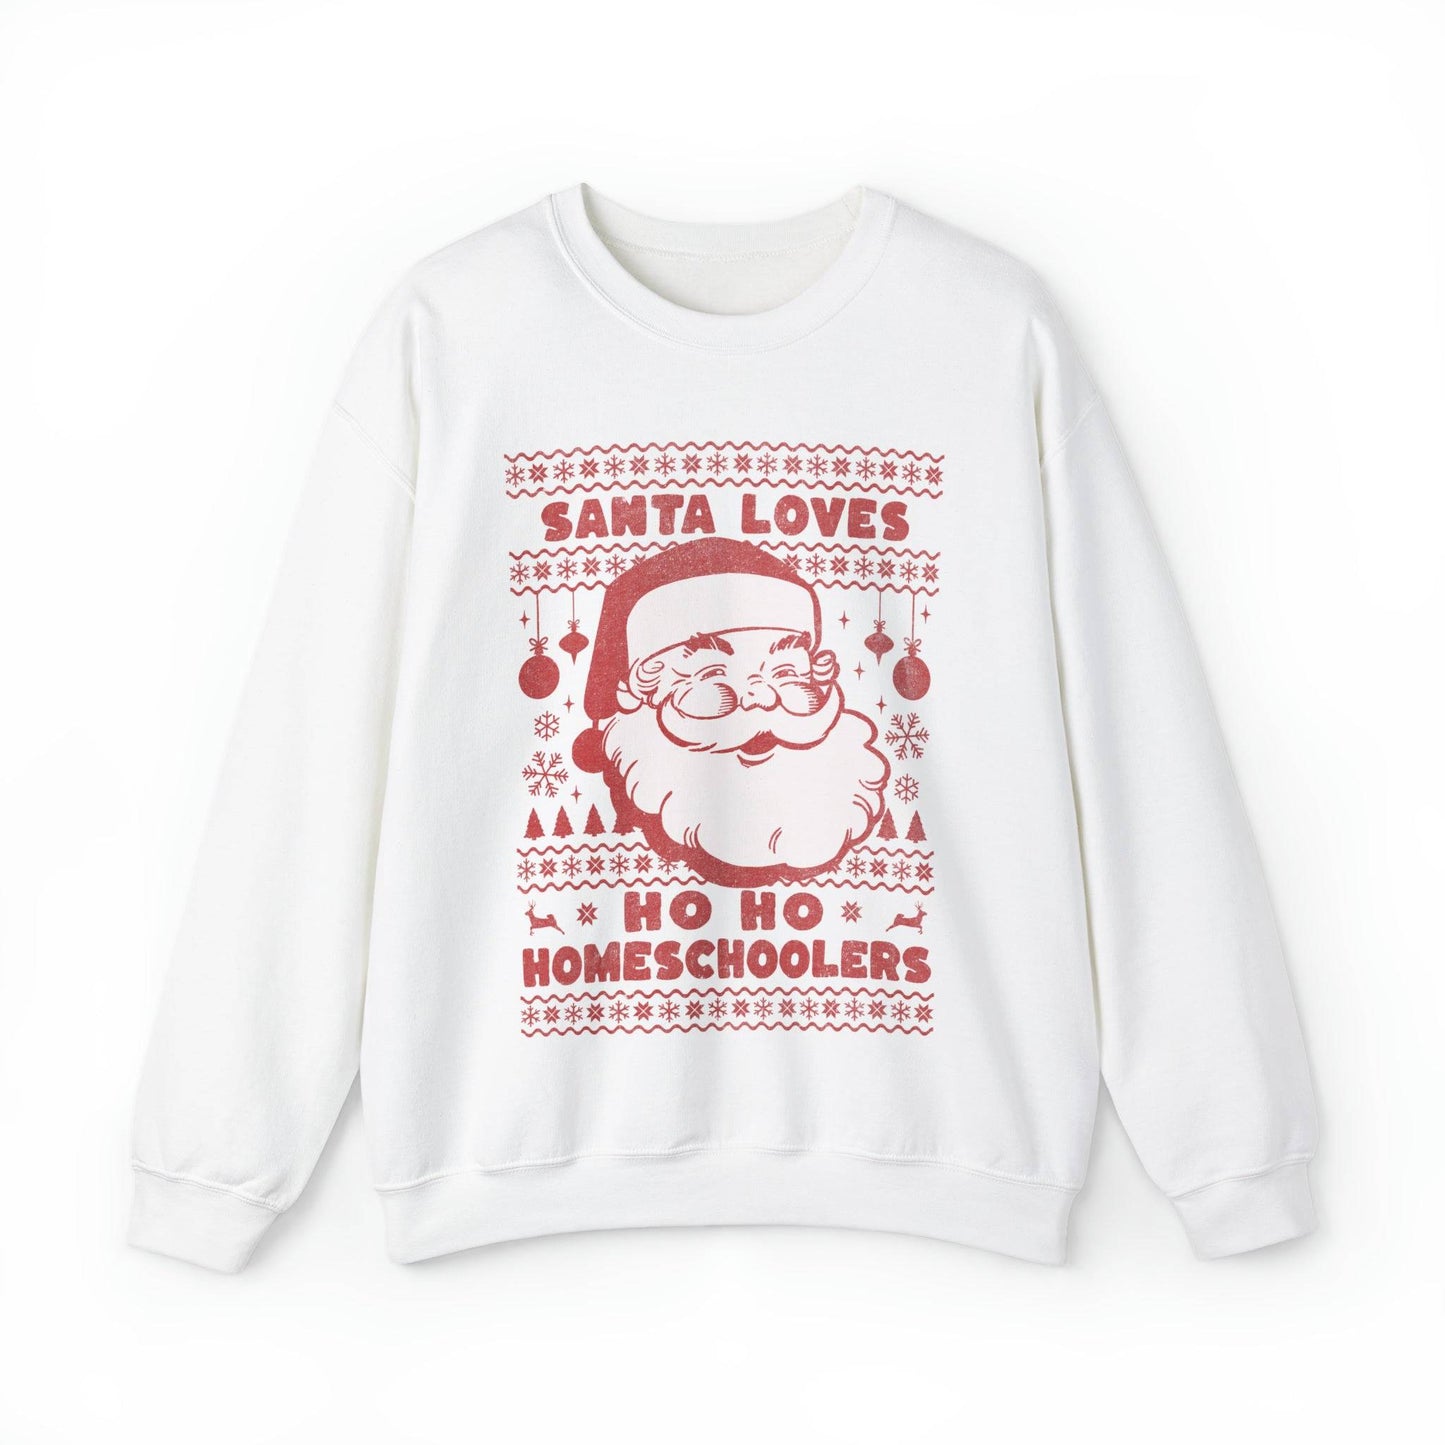 Santa Loves Ho Ho Ho Homeschoolers Adult SweatshirtSanta Loves Ho Ho Ho Homeschoolers Adult Sweatshirt